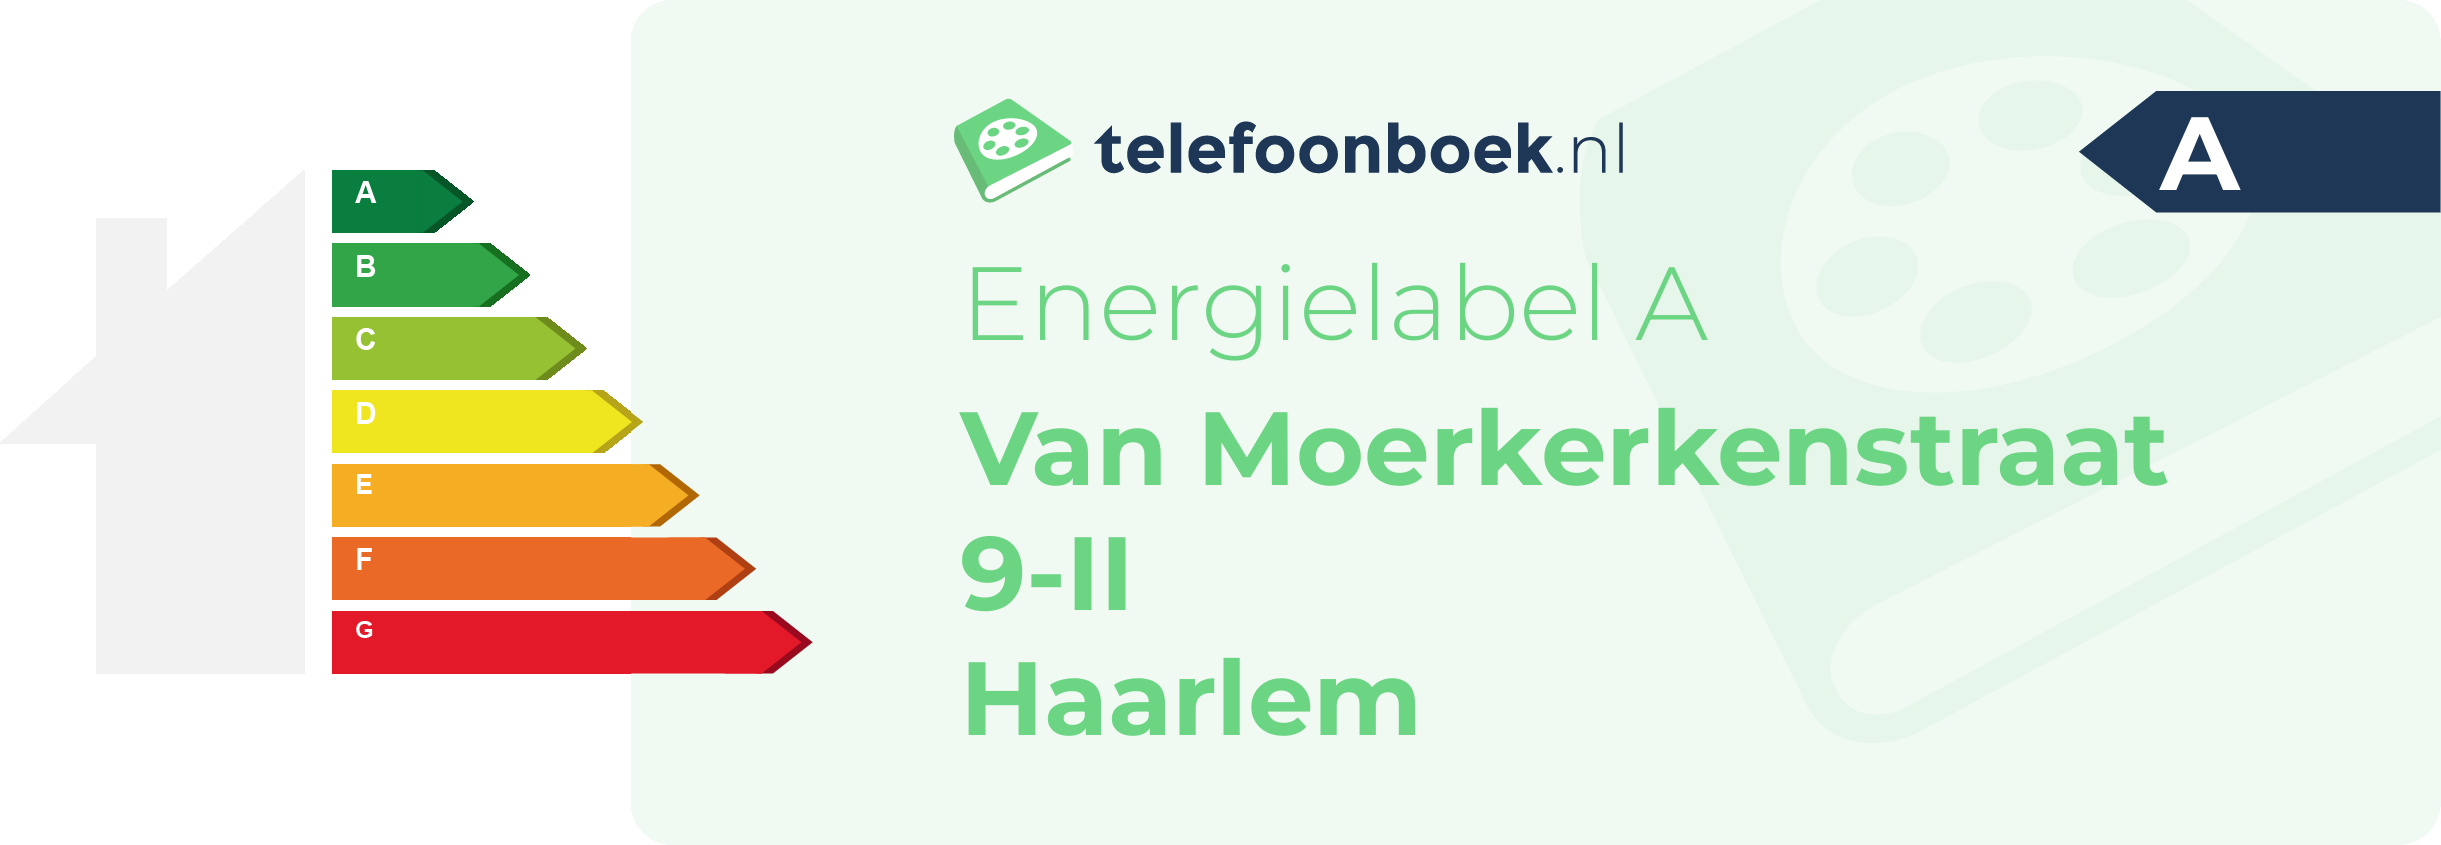 Energielabel Van Moerkerkenstraat 9-II Haarlem